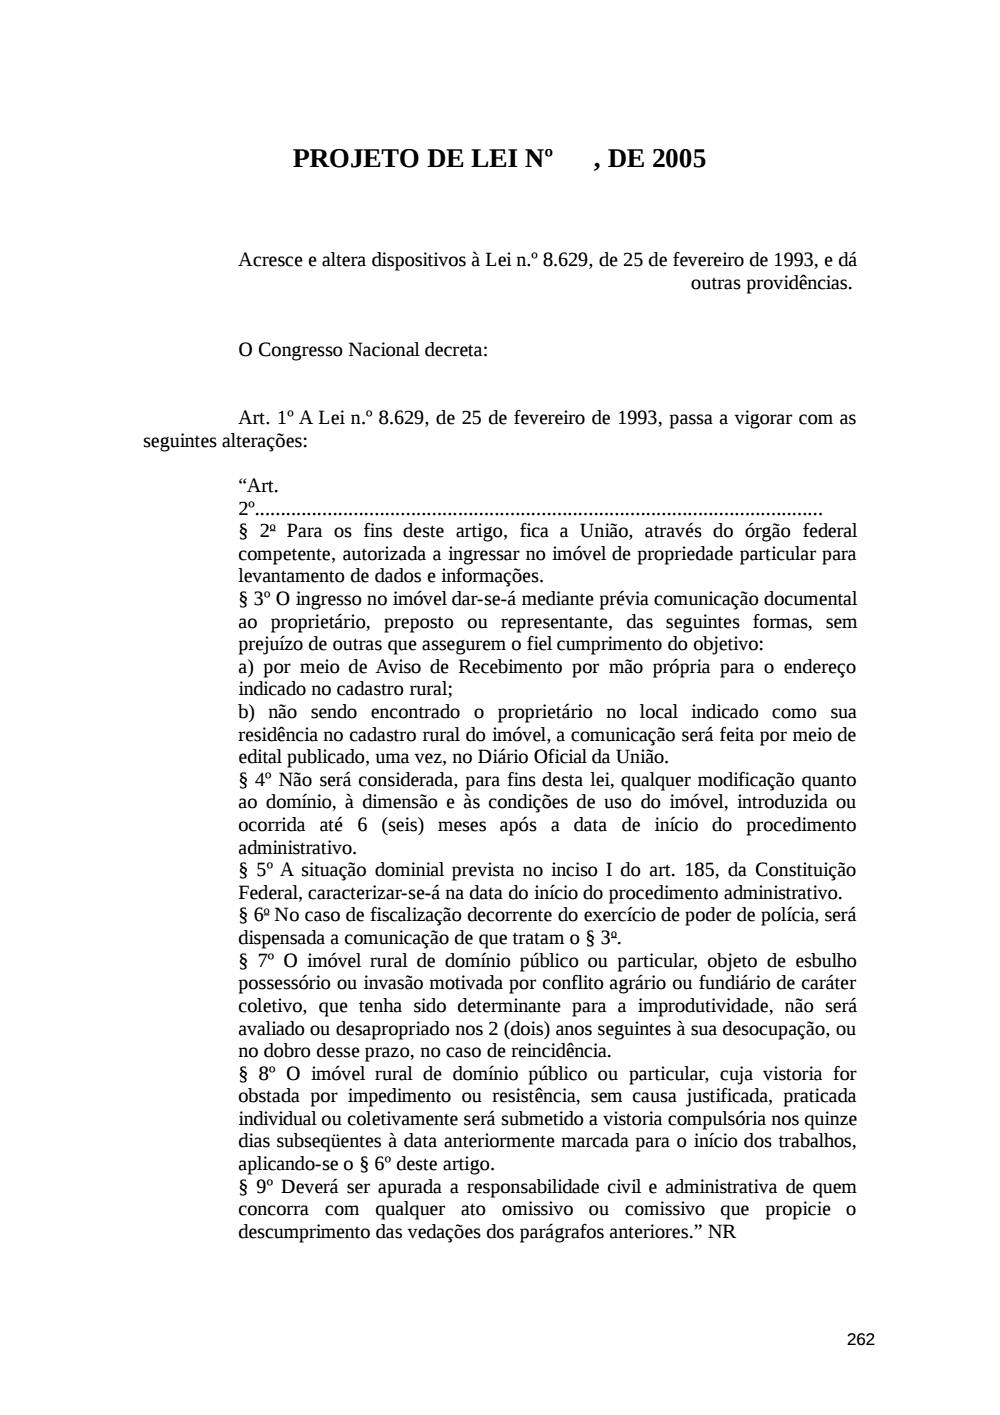 Page 262 from Relatório final da comissão